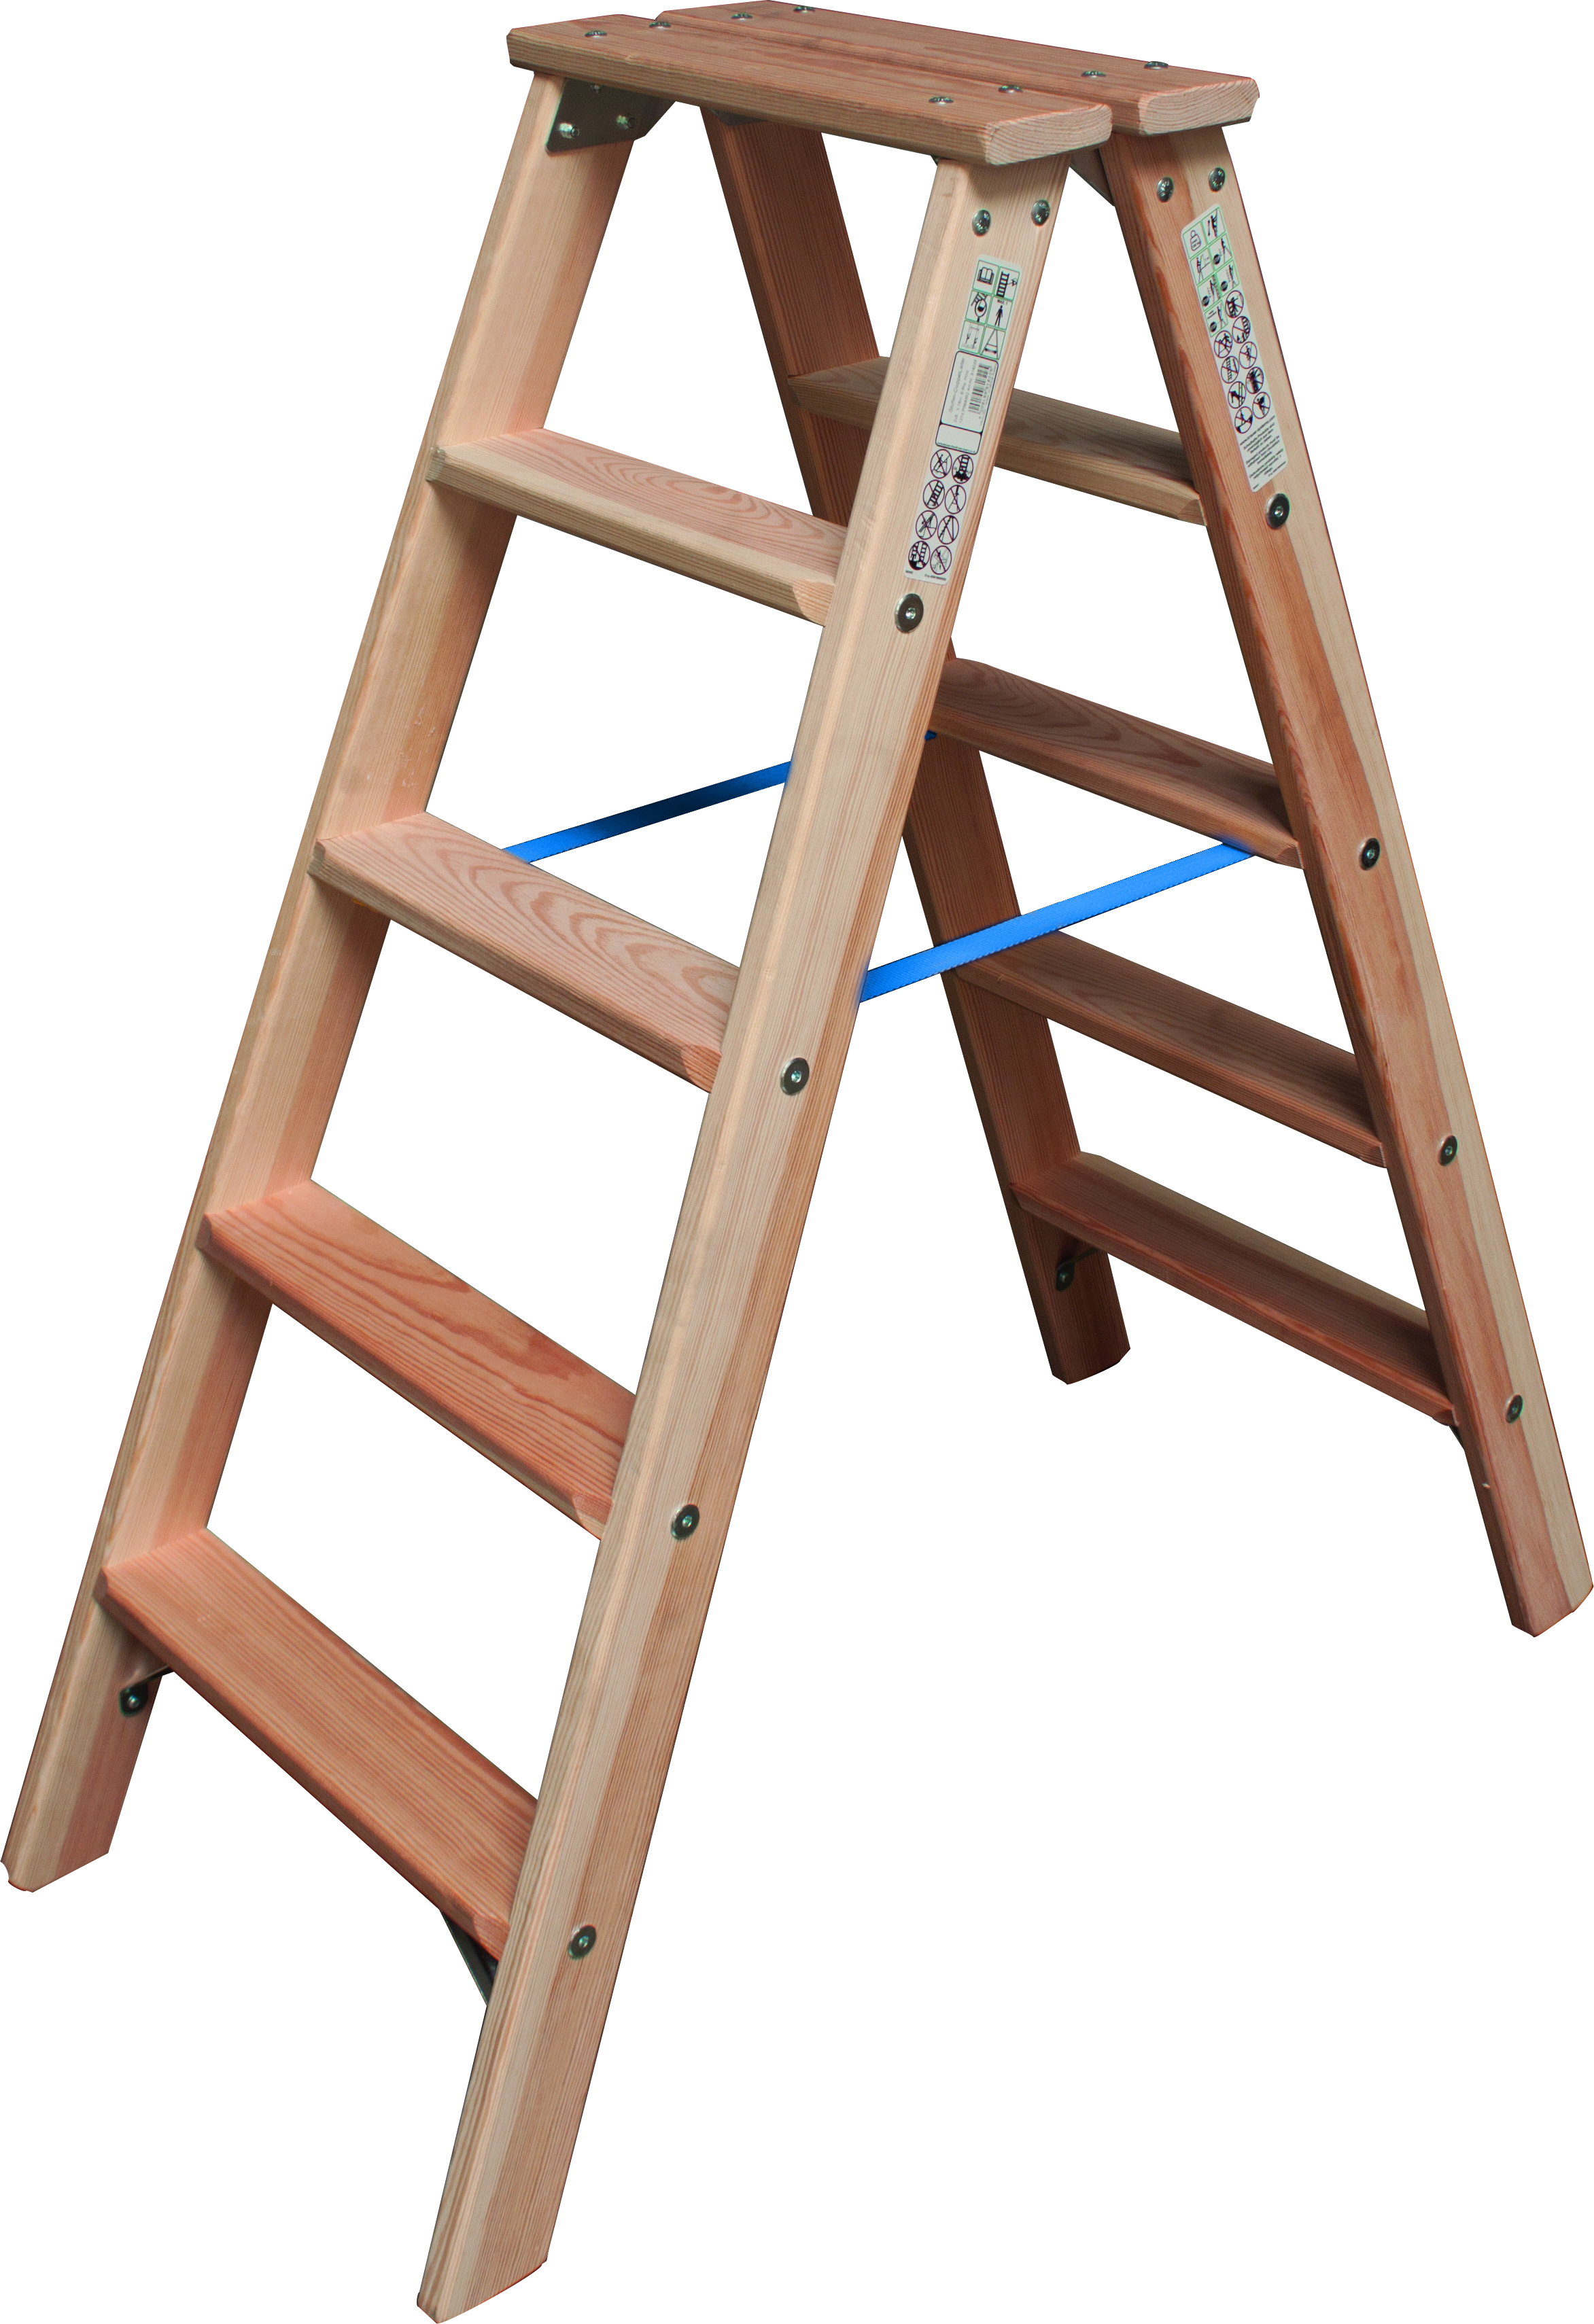 STABILO Stufen-DoppelLeiter Holz, 2x6 Stufen